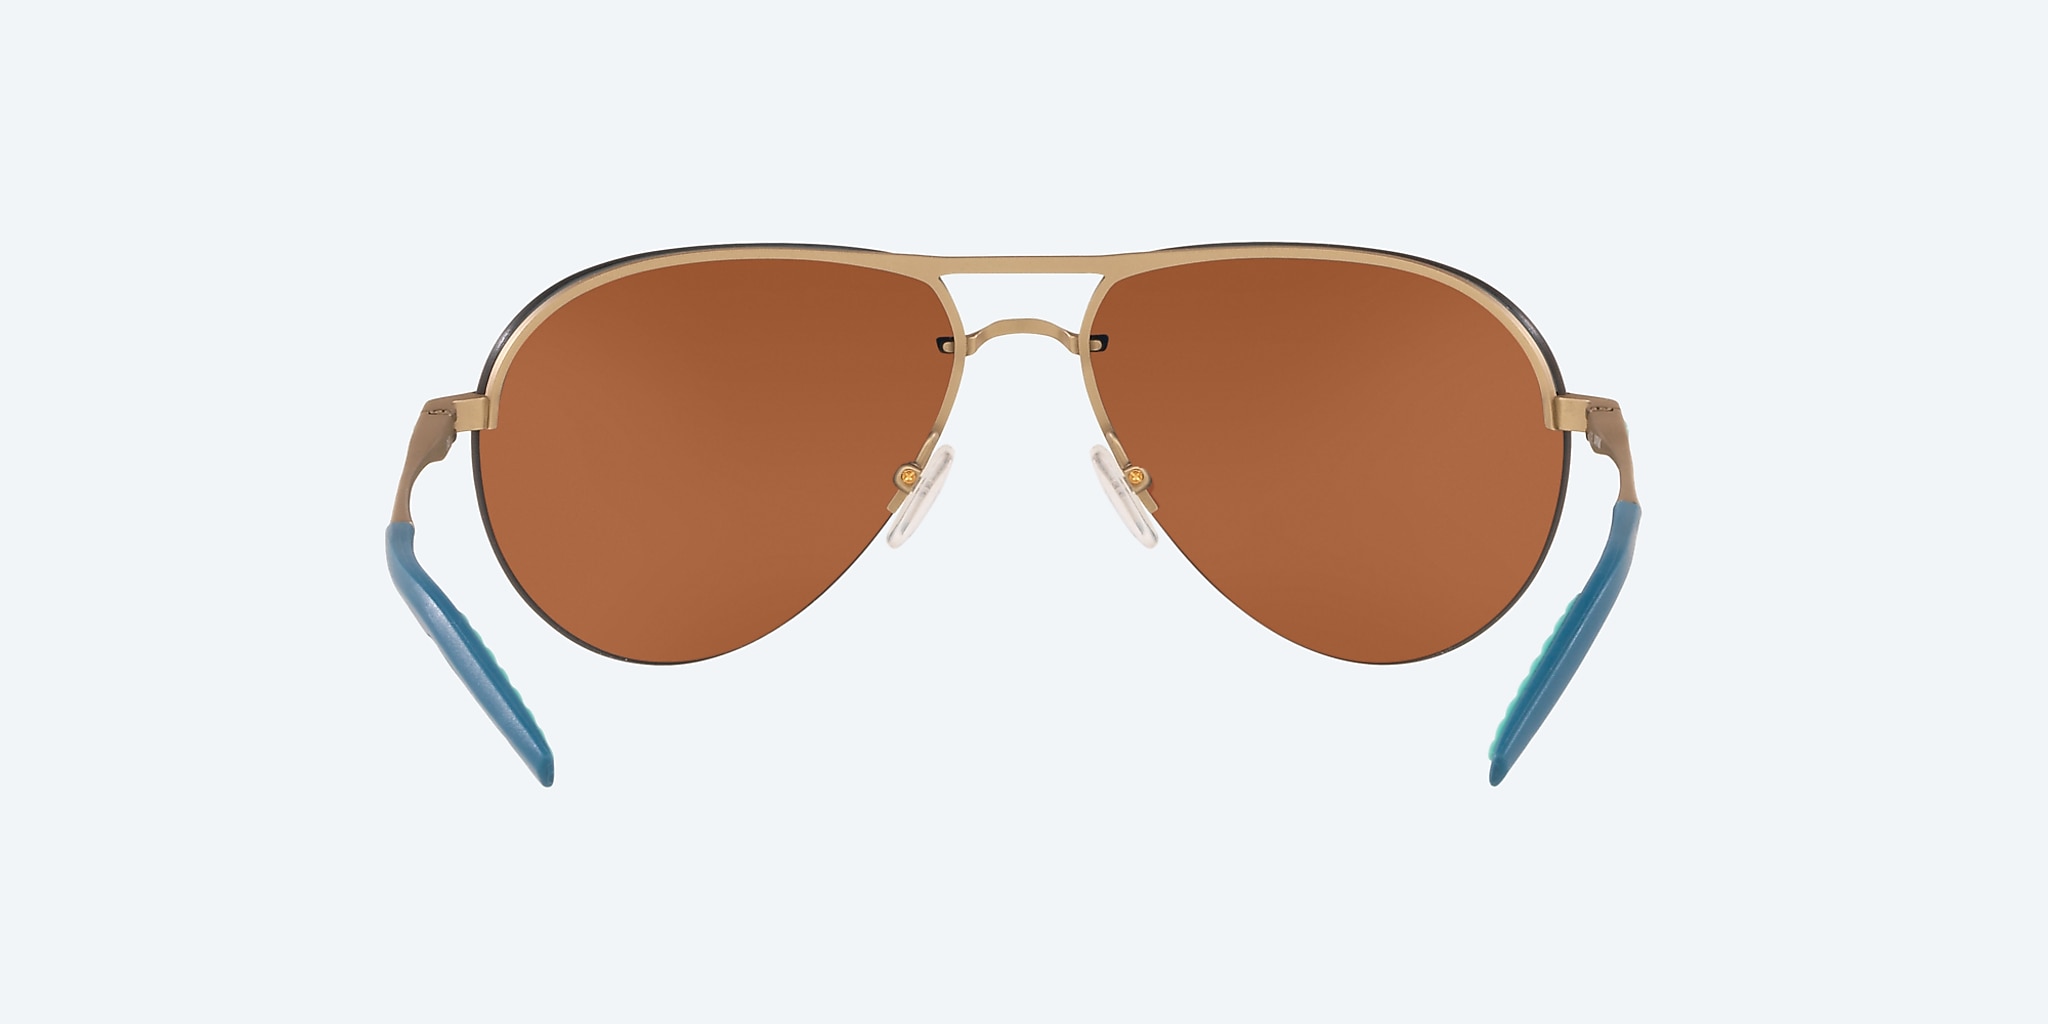 Helo Polarized Sunglasses in Green Mirror | Costa Del Mar®